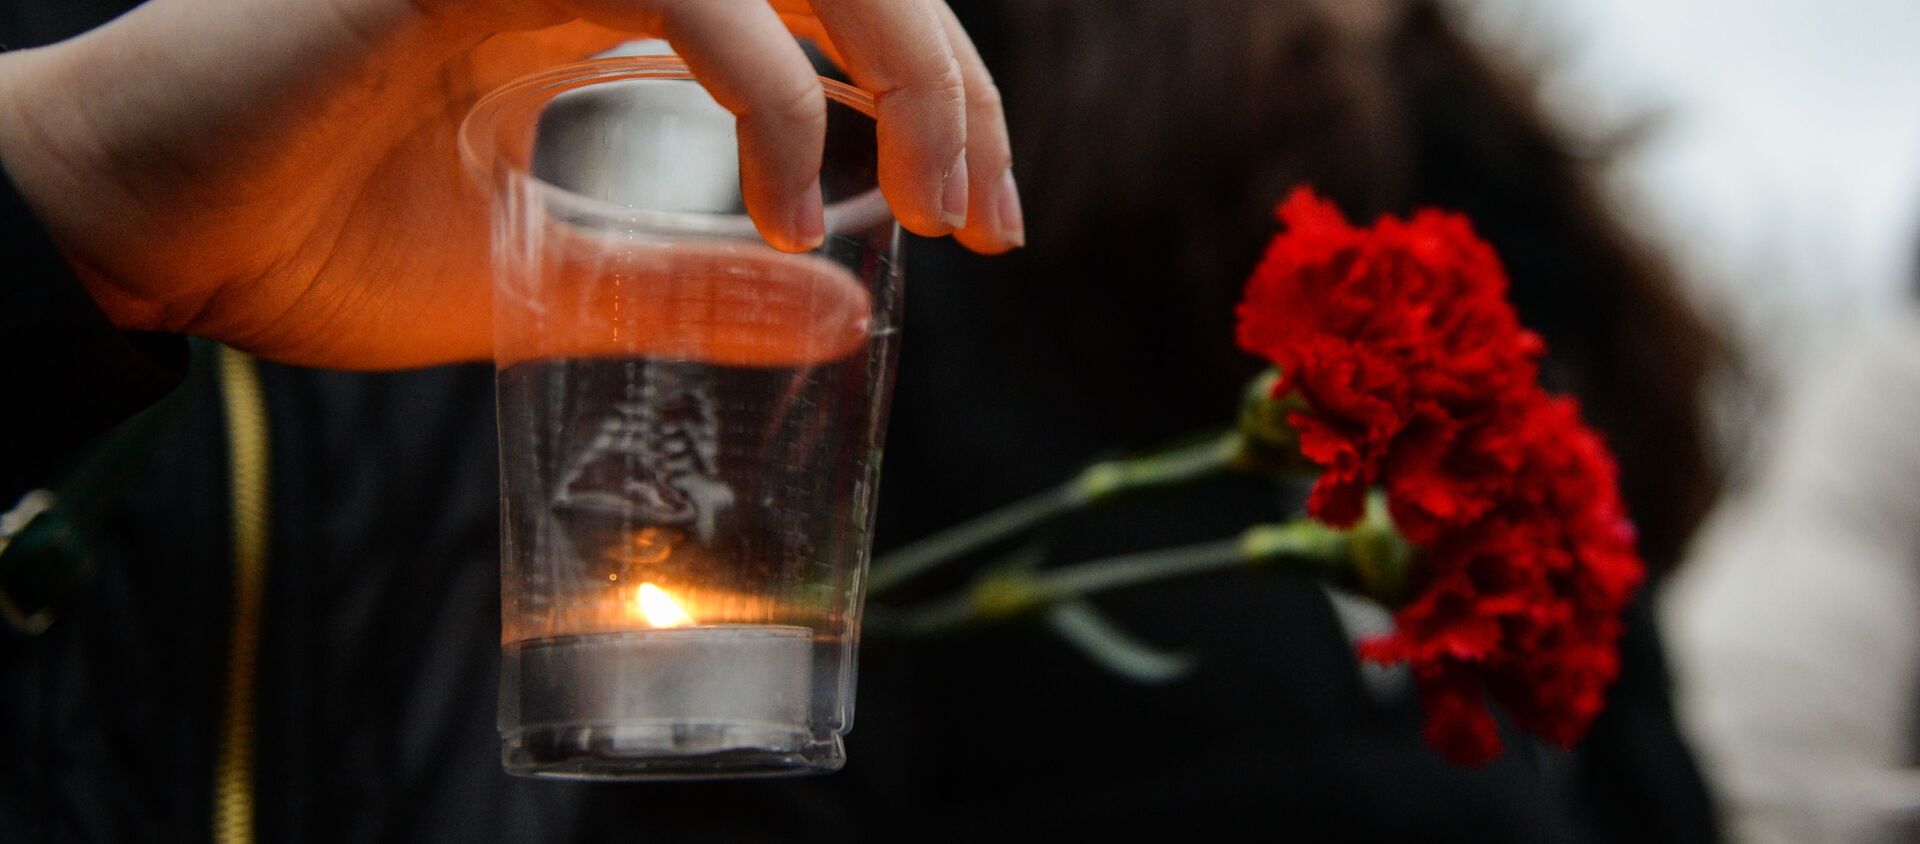 Цветы и свеча в руках скорбящей девушки - Sputnik Армения, 1920, 22.12.2018